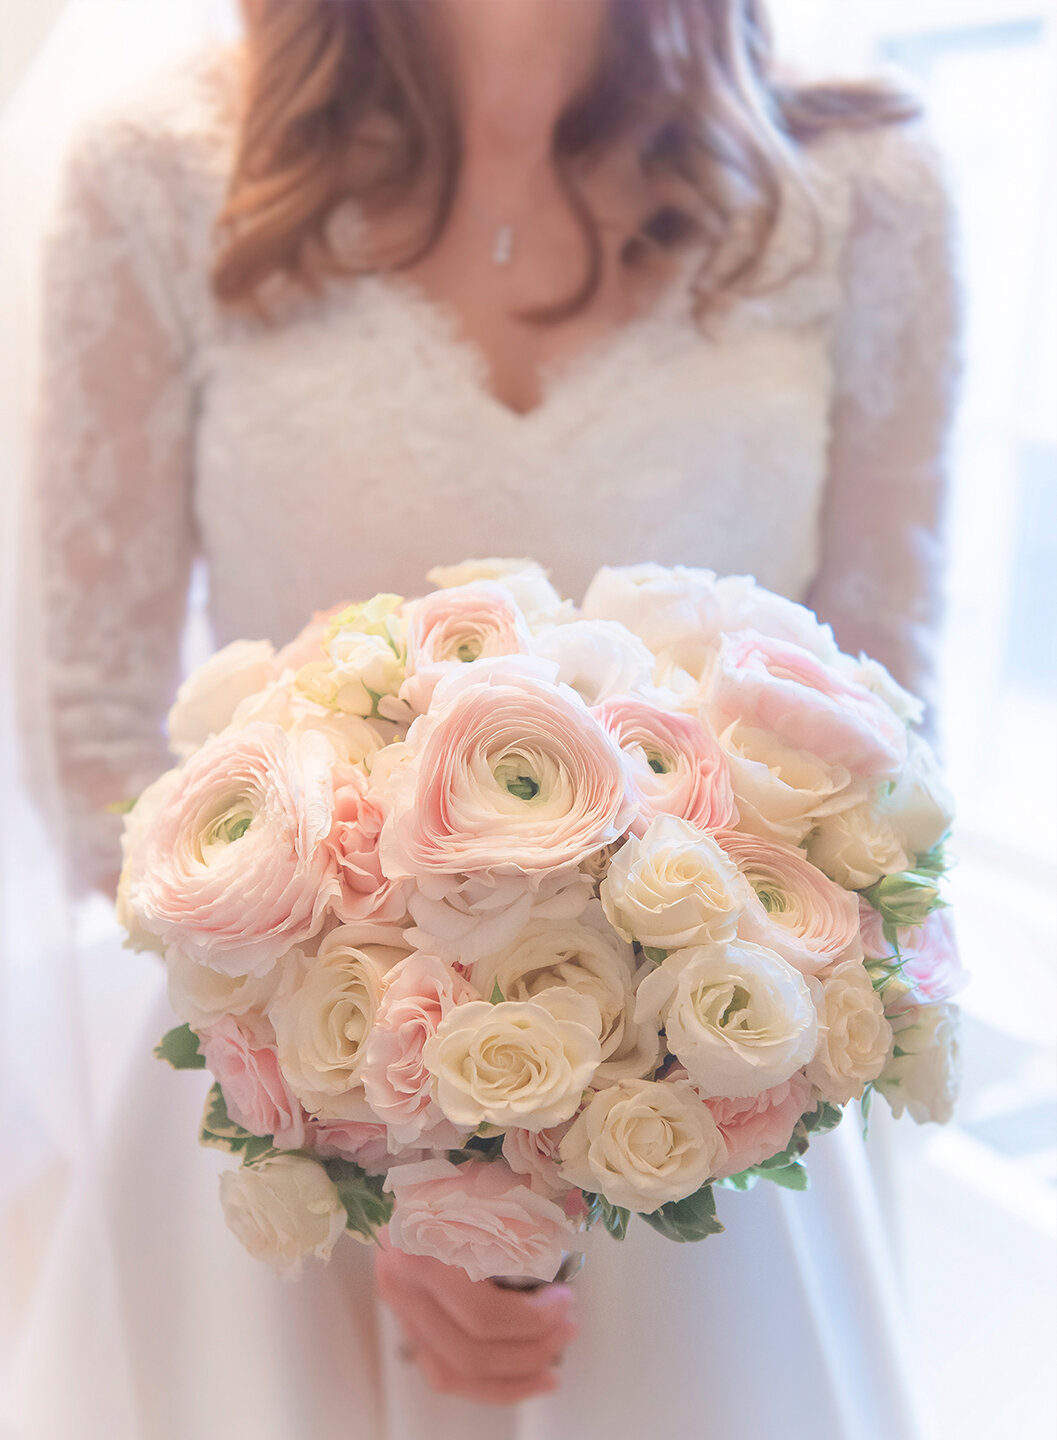 The  bride's bouquet